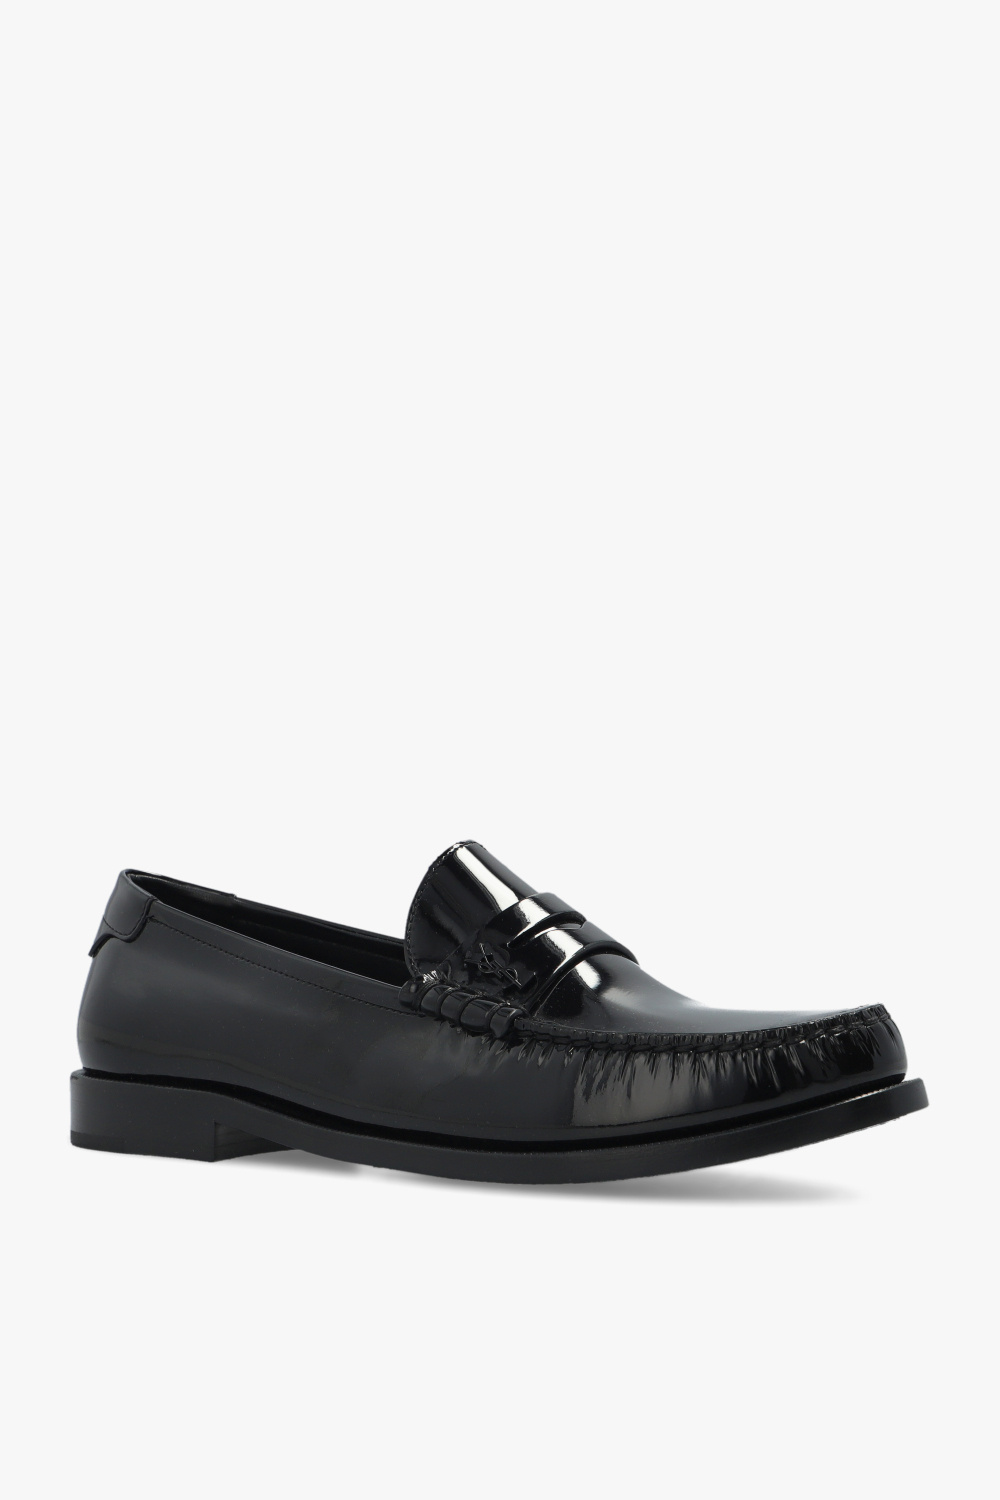 Saint Laurent ‘Penny’ loafers